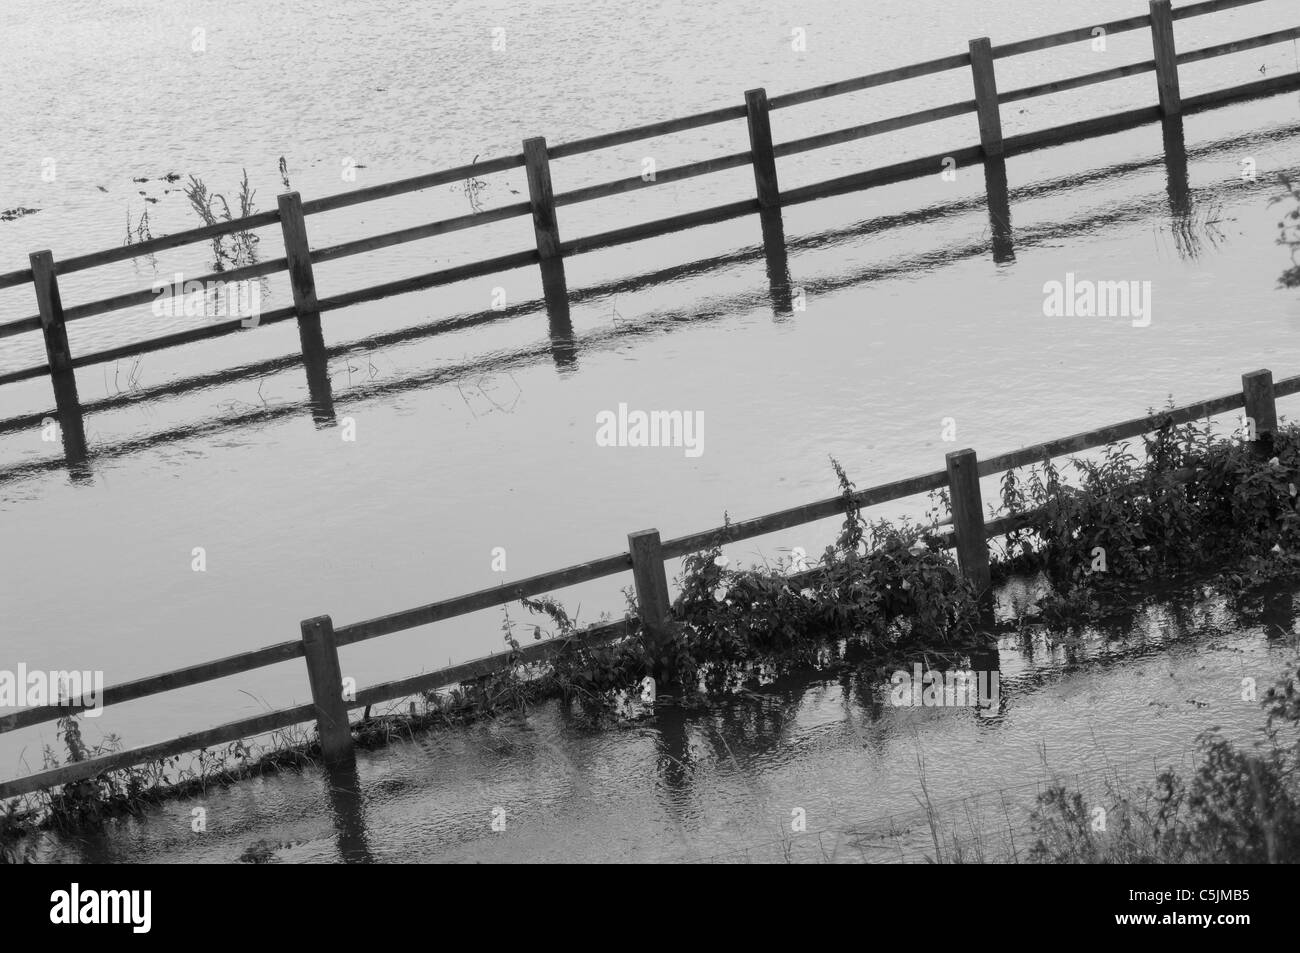 Les inondations dans la vallée de Soar, Leicestershire, UK, après une pluie torrentielle, 2008. La rivière Soar avait éclaté c'est les banques. Banque D'Images